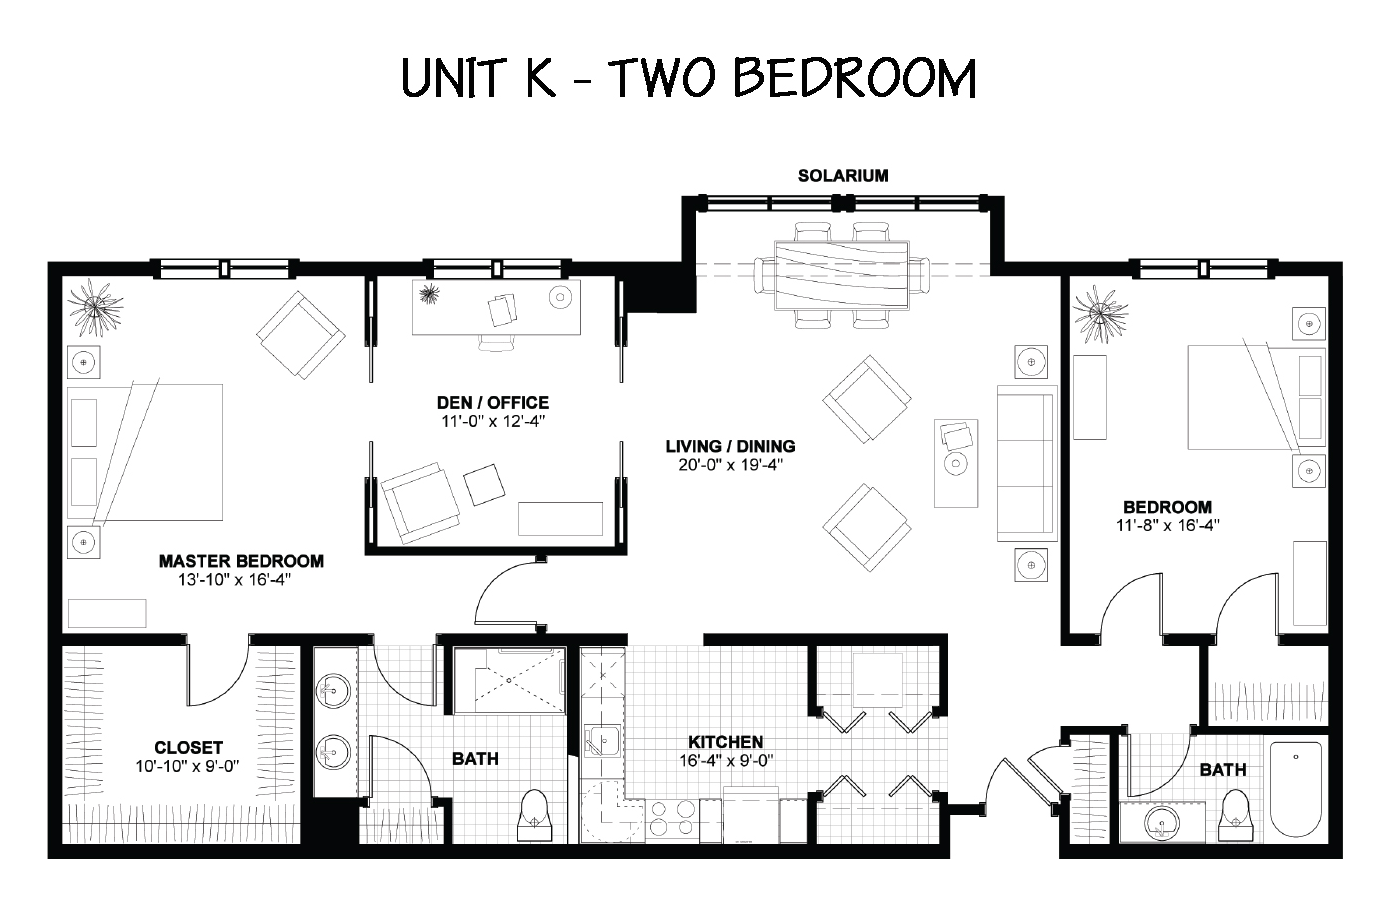 Floor Plan - The Woodlands - 2 Bedrooms - Unit K